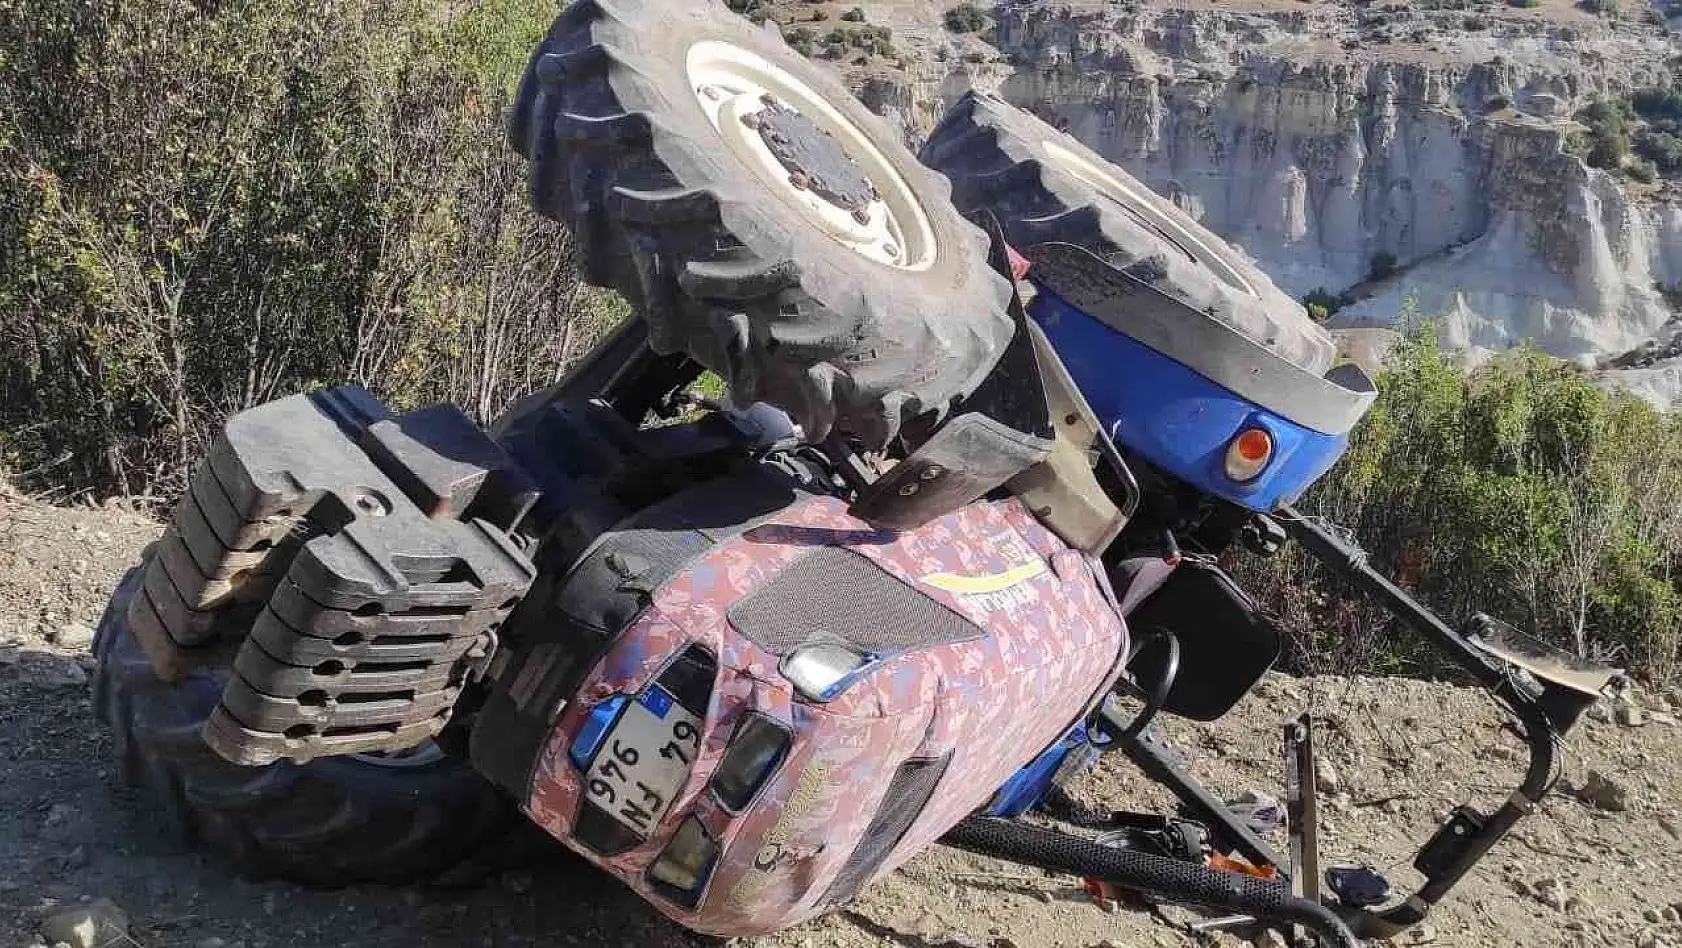 Takla atan traktörün sürücüsü yaralandı